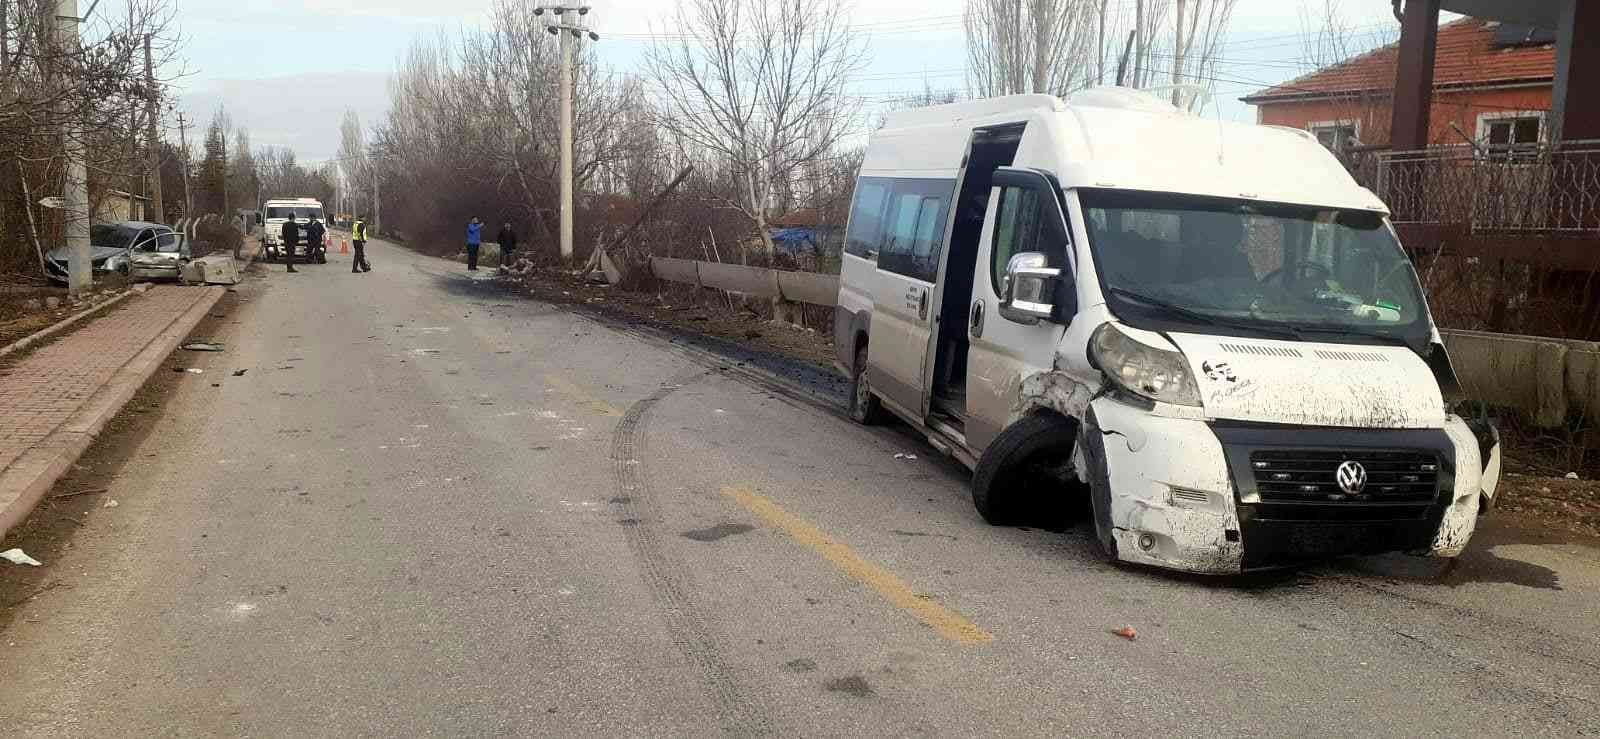 Konya’da öğrenci servisi ile otomobil çarpıştı: 14 yaralı #konya